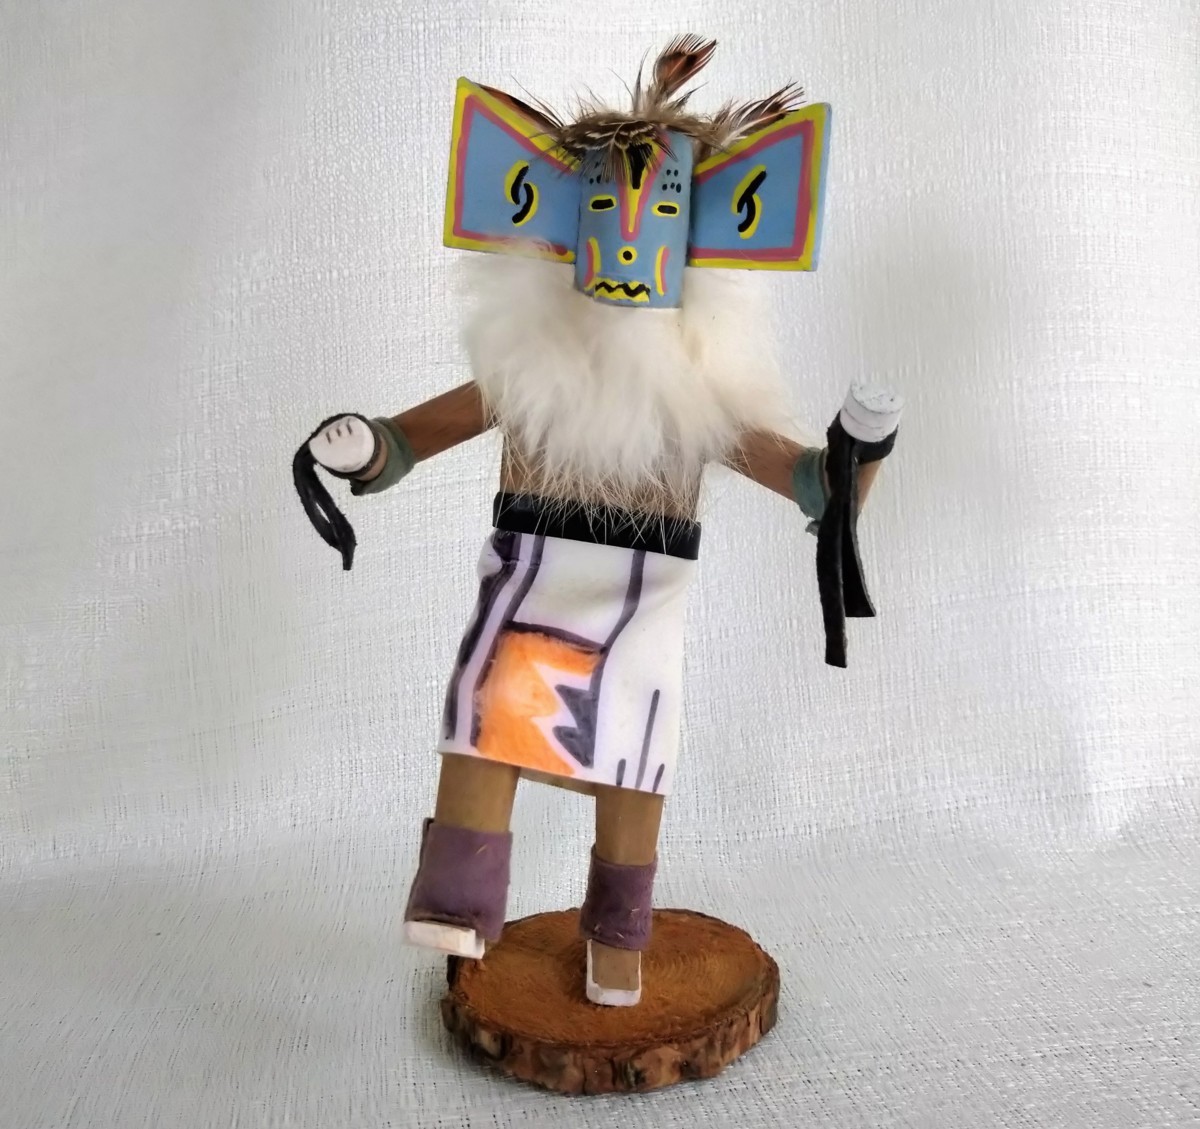 カチナドール ネイティブ・アメリカン ハンドメイド 精霊 インディアン Kachina Doll 木彫り・手作り 伝統工芸品/カチナ人形 